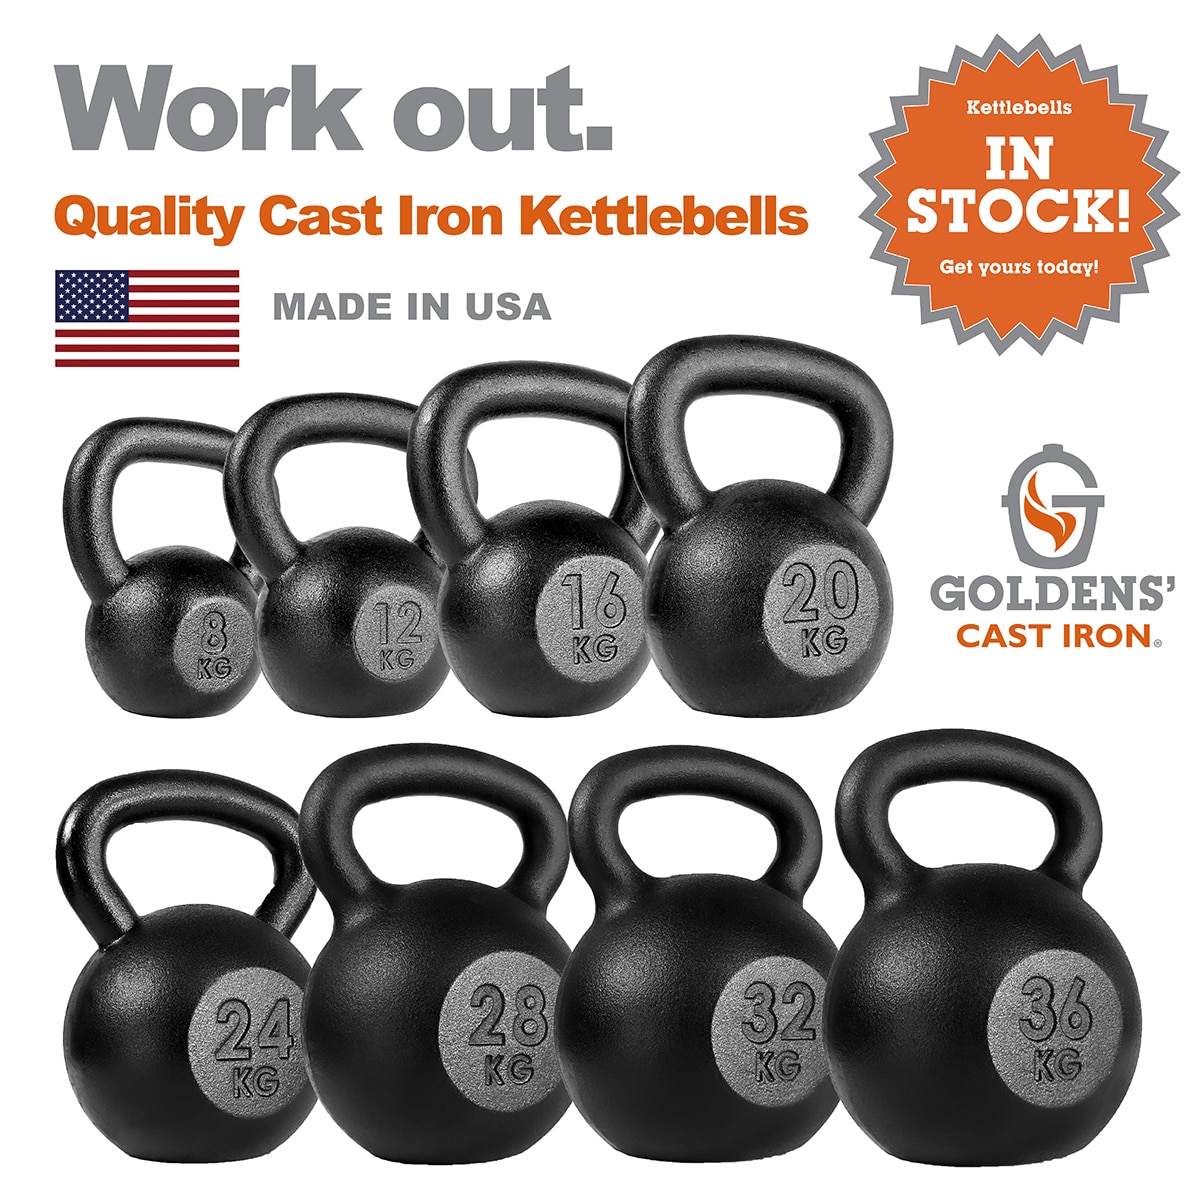 Goldens' Cast Iron Kettlebell Full Set 8kg-36kg